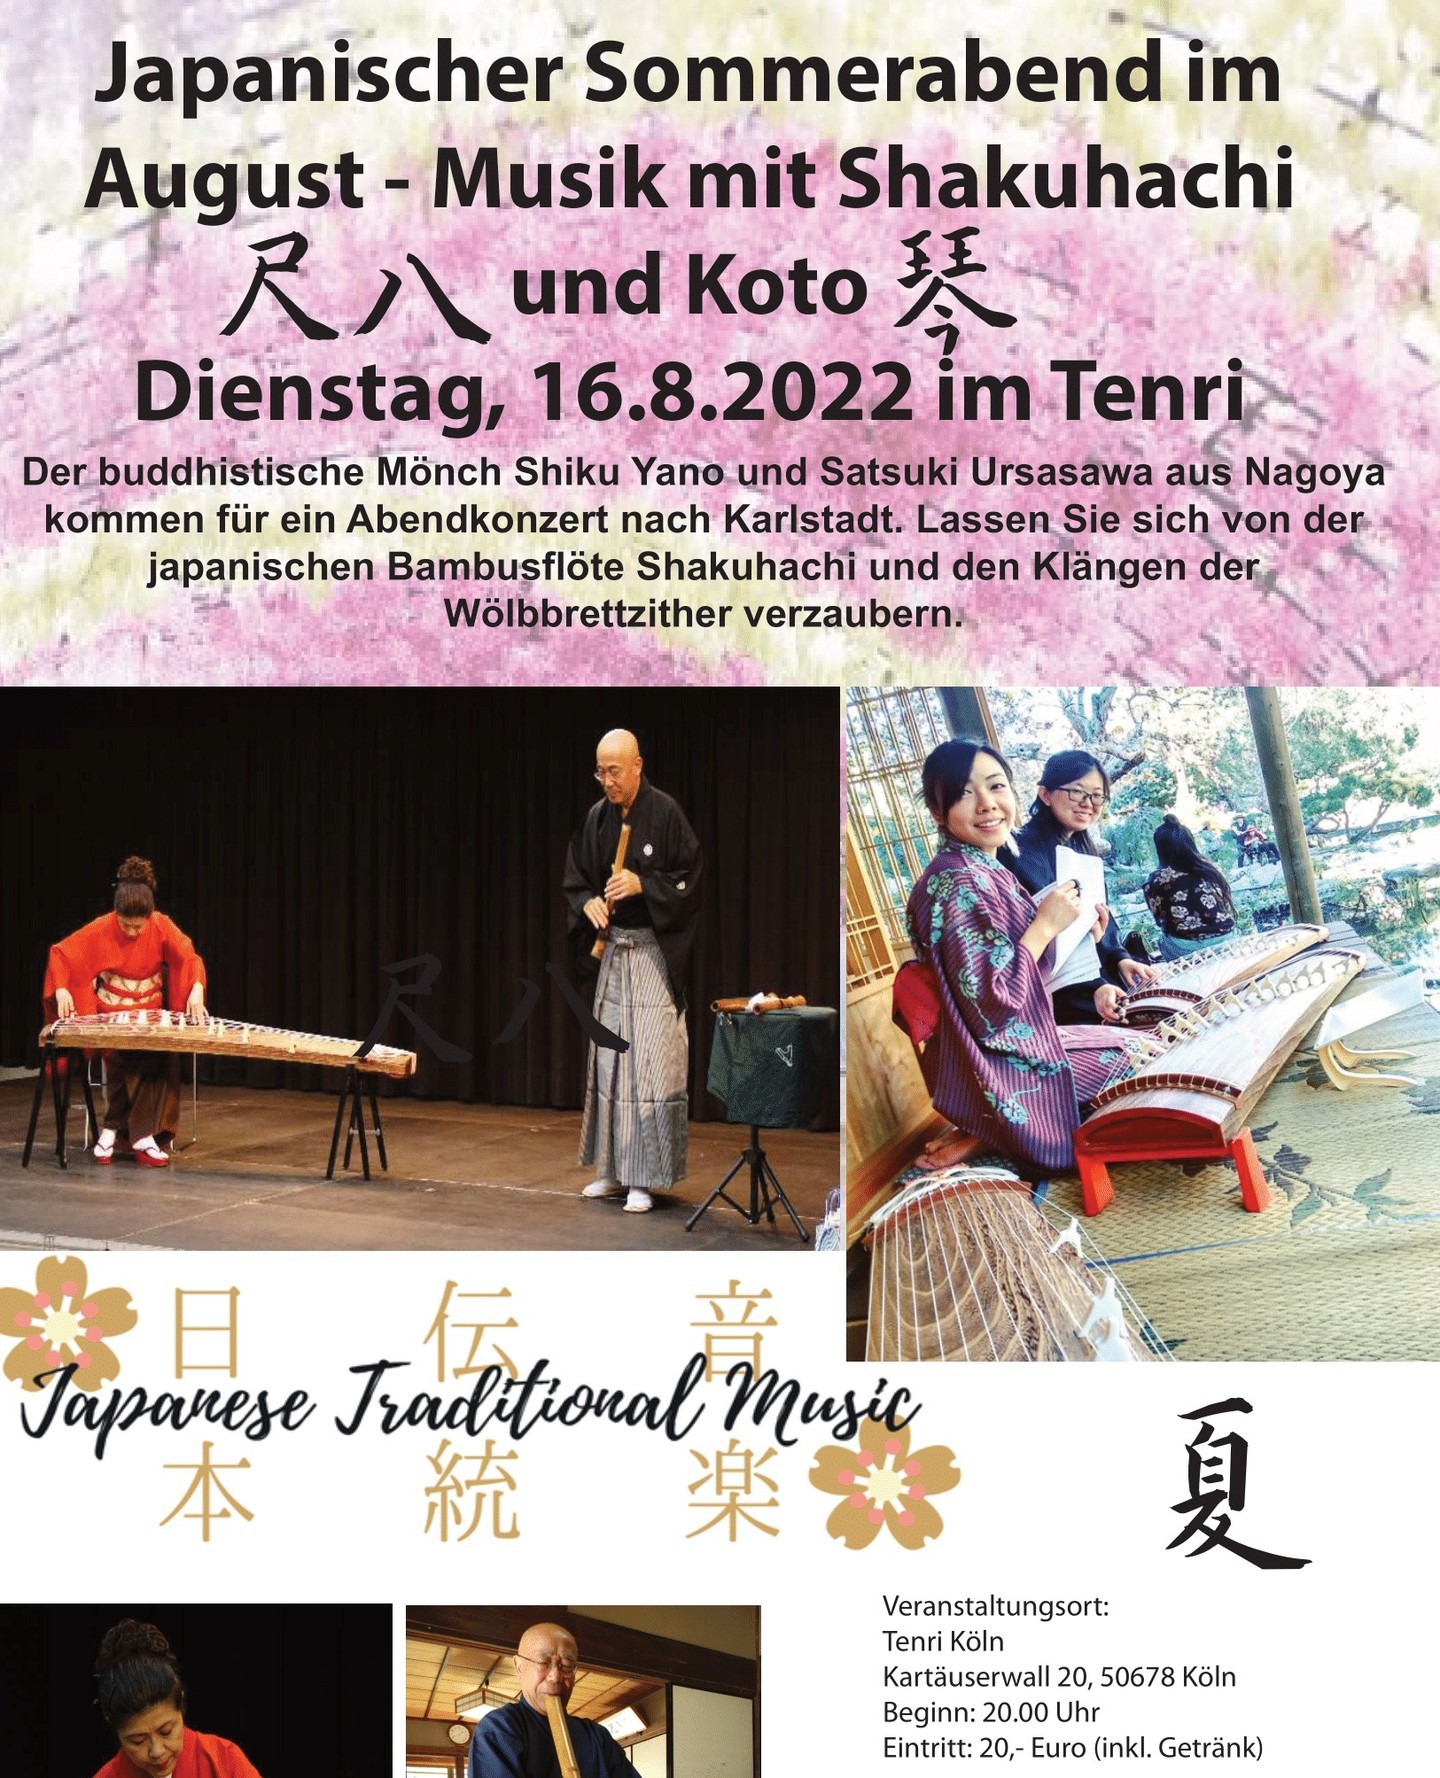 🎋~ Japanischer Sommerabend in der Tenri Kulturwerkstatt ~🎋⁠
⁠
Genießen Sie ein sommerabendliches Konzert mit Shakuhachi und Koto! Die traditionelle japanische Musik wird gespielt von Satsuki Urasawa und dem buddhistischen Mönch Shiku Yano aus Nagoya. ⁠
⁠
Wann: Dienstag, 16.08.2022 um 20 Uhr⁠
⁠
Für ausreichend Belüftung ist gesorgt.⁠
⁠
#traditional #traditionell # traditionellemusik #klassik #musik #music #konzert #köln #tenri #kunst #art #cologne #exhibition #deutschland #kultur #germany #japan #kulturwerkstatt #supportcreatives #koto #shakuhachi #nagoya #klassischemusik #classicalmusic #summer #summerconcert #august #japanesetraditionalmusic #japanese #夏　#尺八